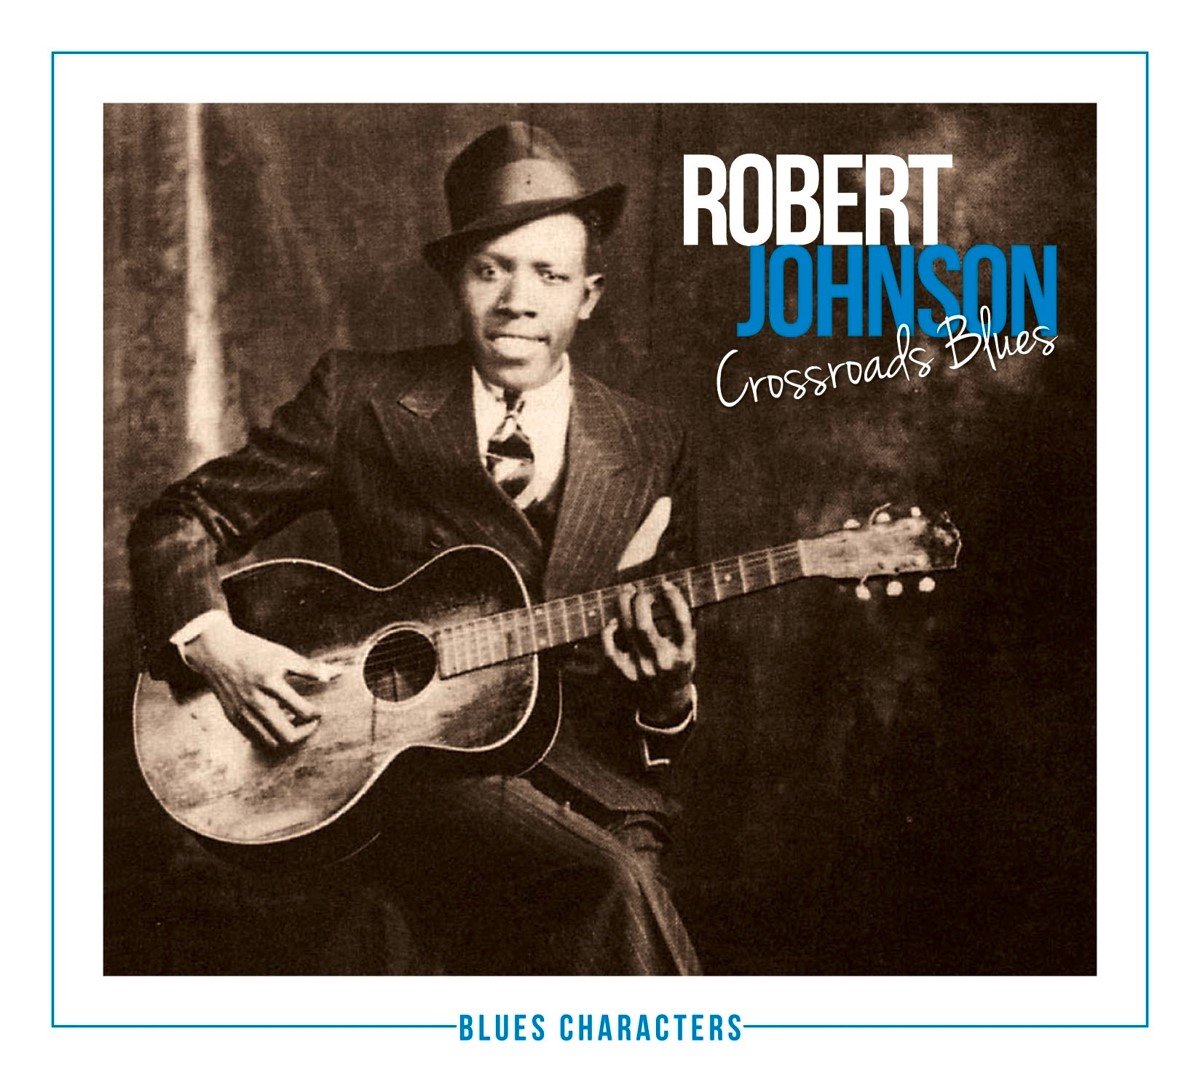 Robert Johnson - Crossroads Blues (CD) - Robert Johnson